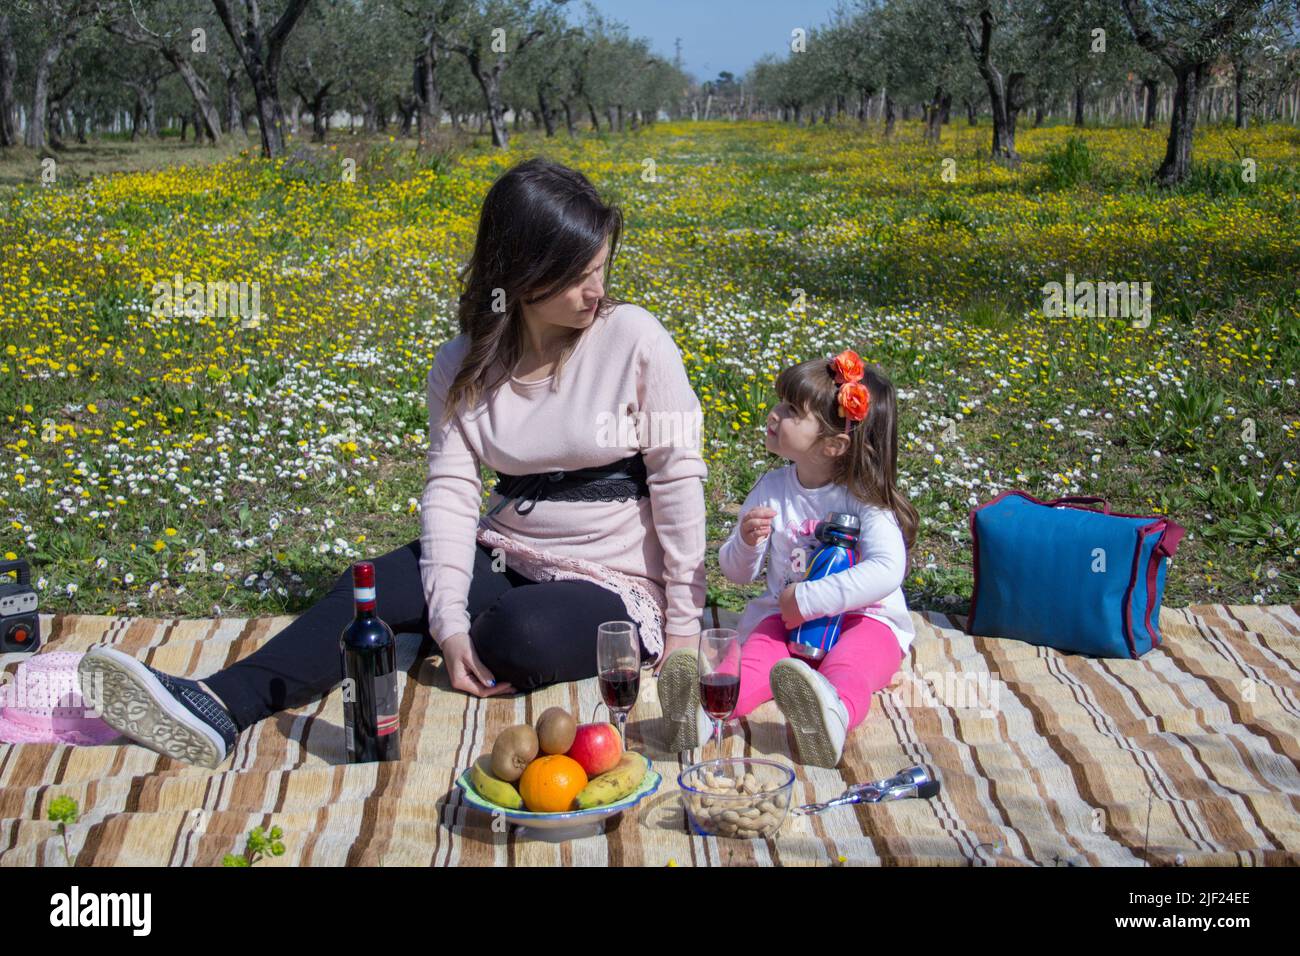 Image d'une mère avec sa fille assise sur un pré fleuri tout en ayant un pique-nique pendant des vacances en Toscane Italie Banque D'Images